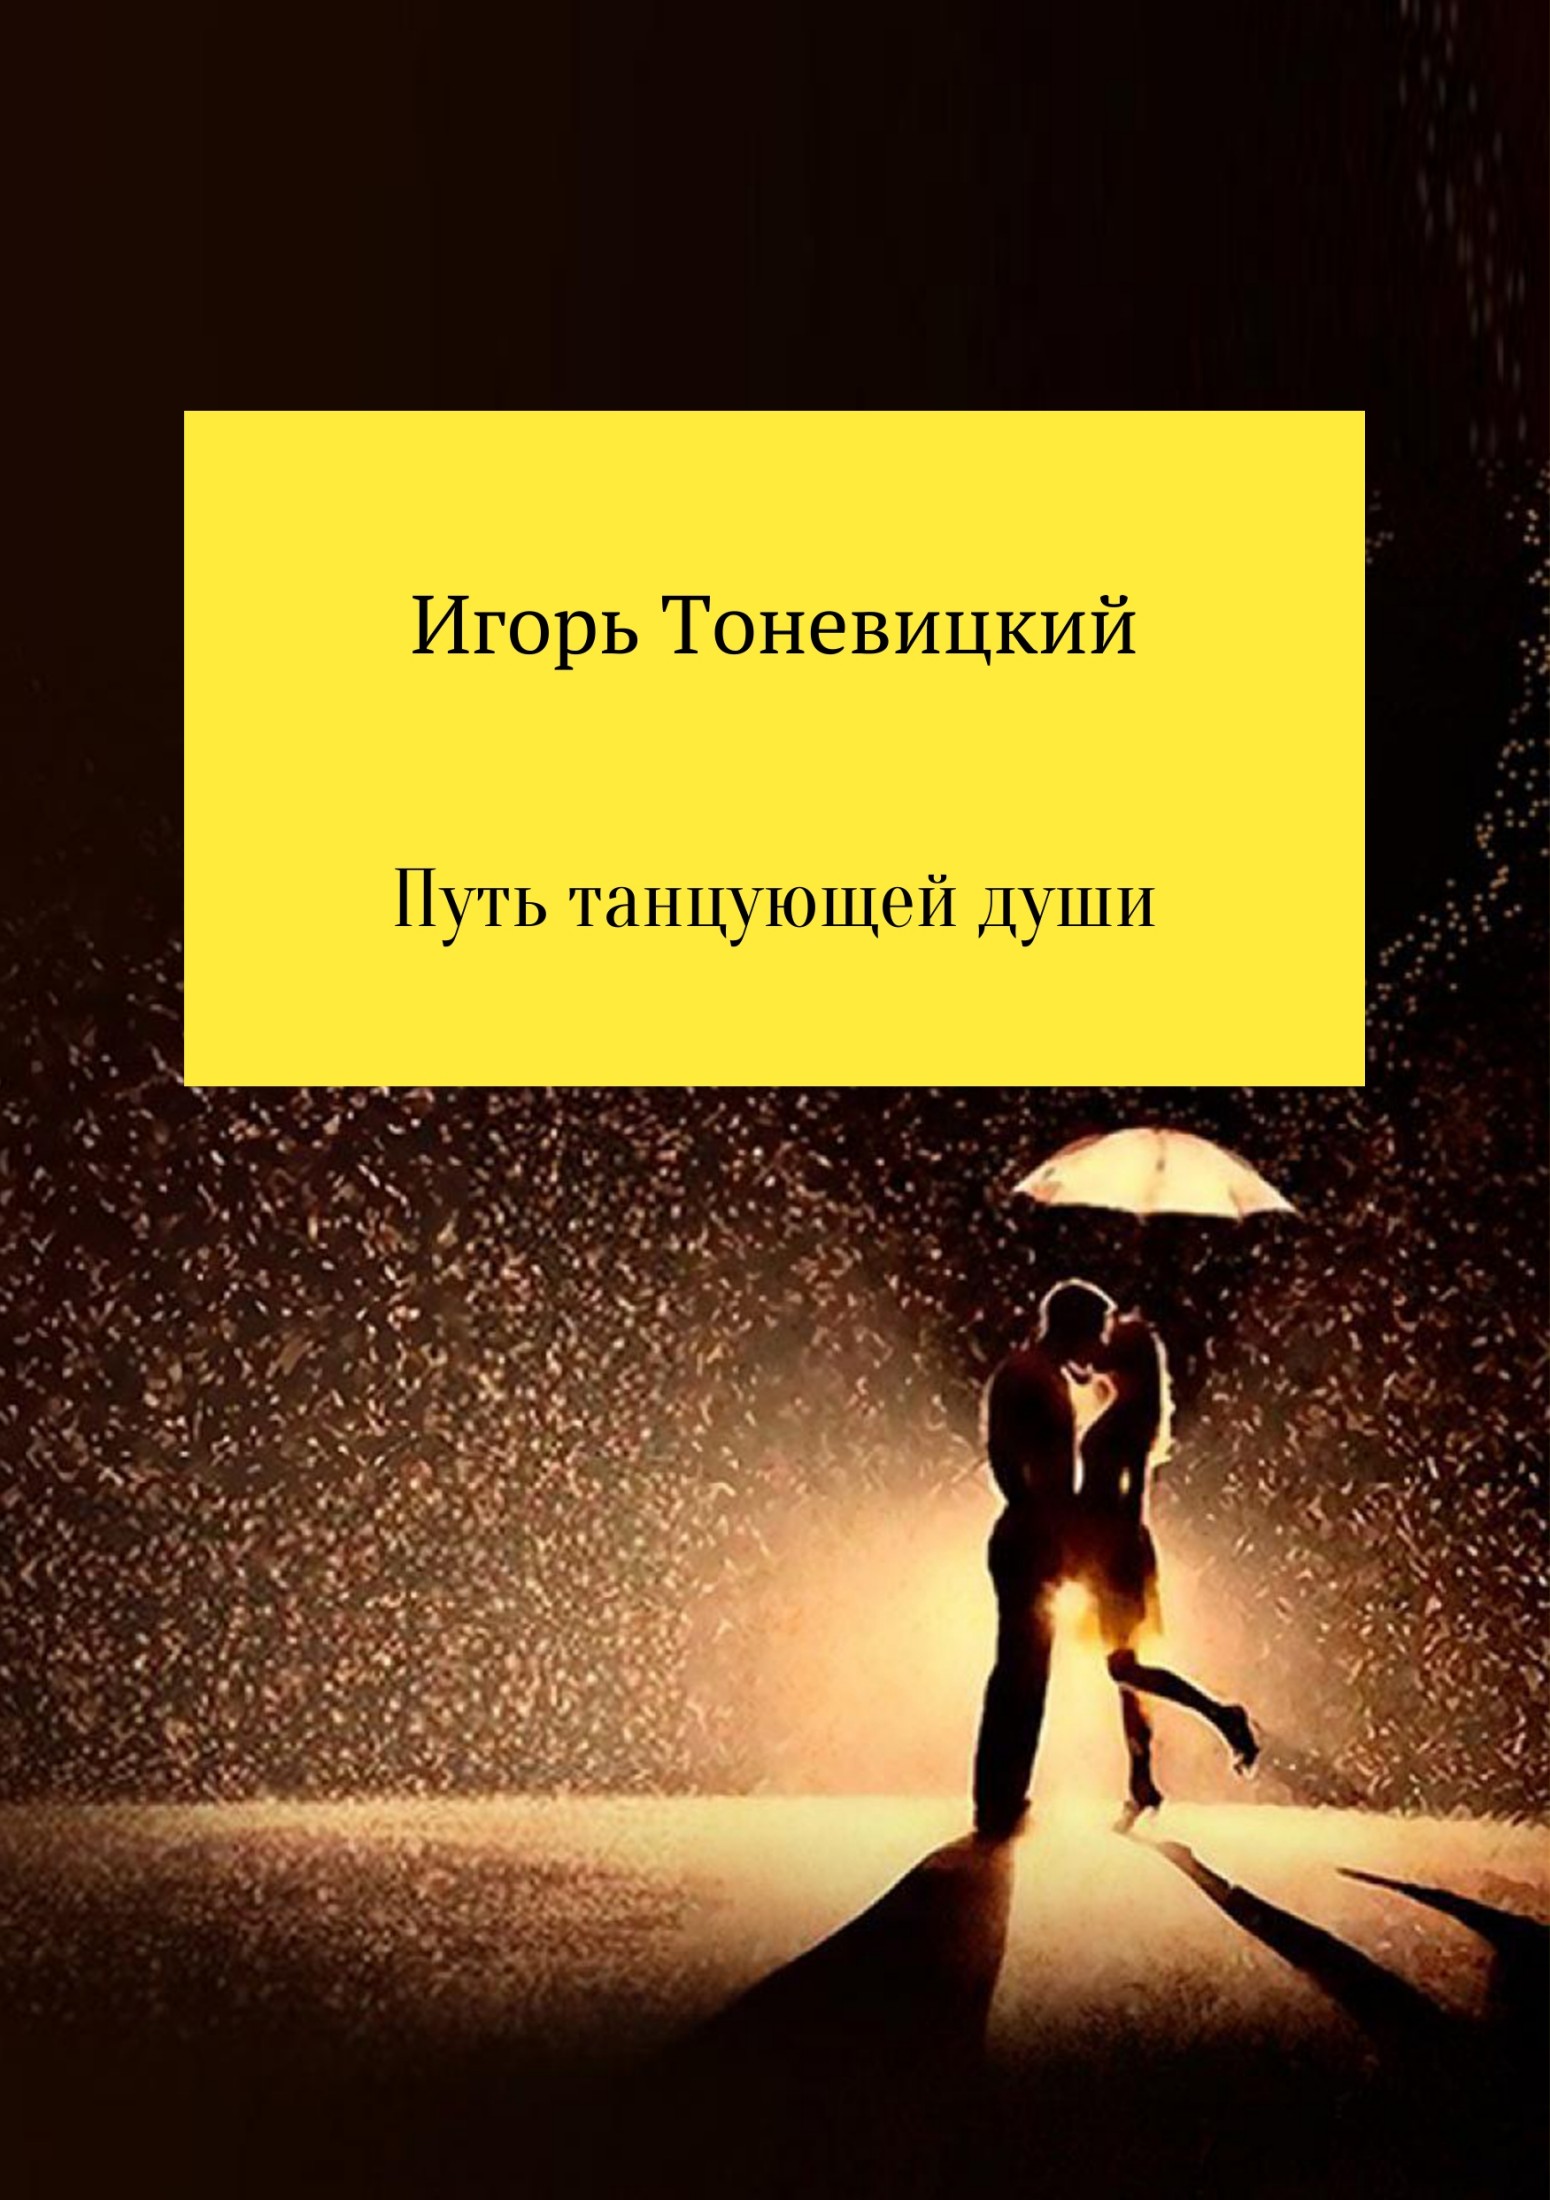 Путь танцующей души - Игорь Николаевич Тоневицкий